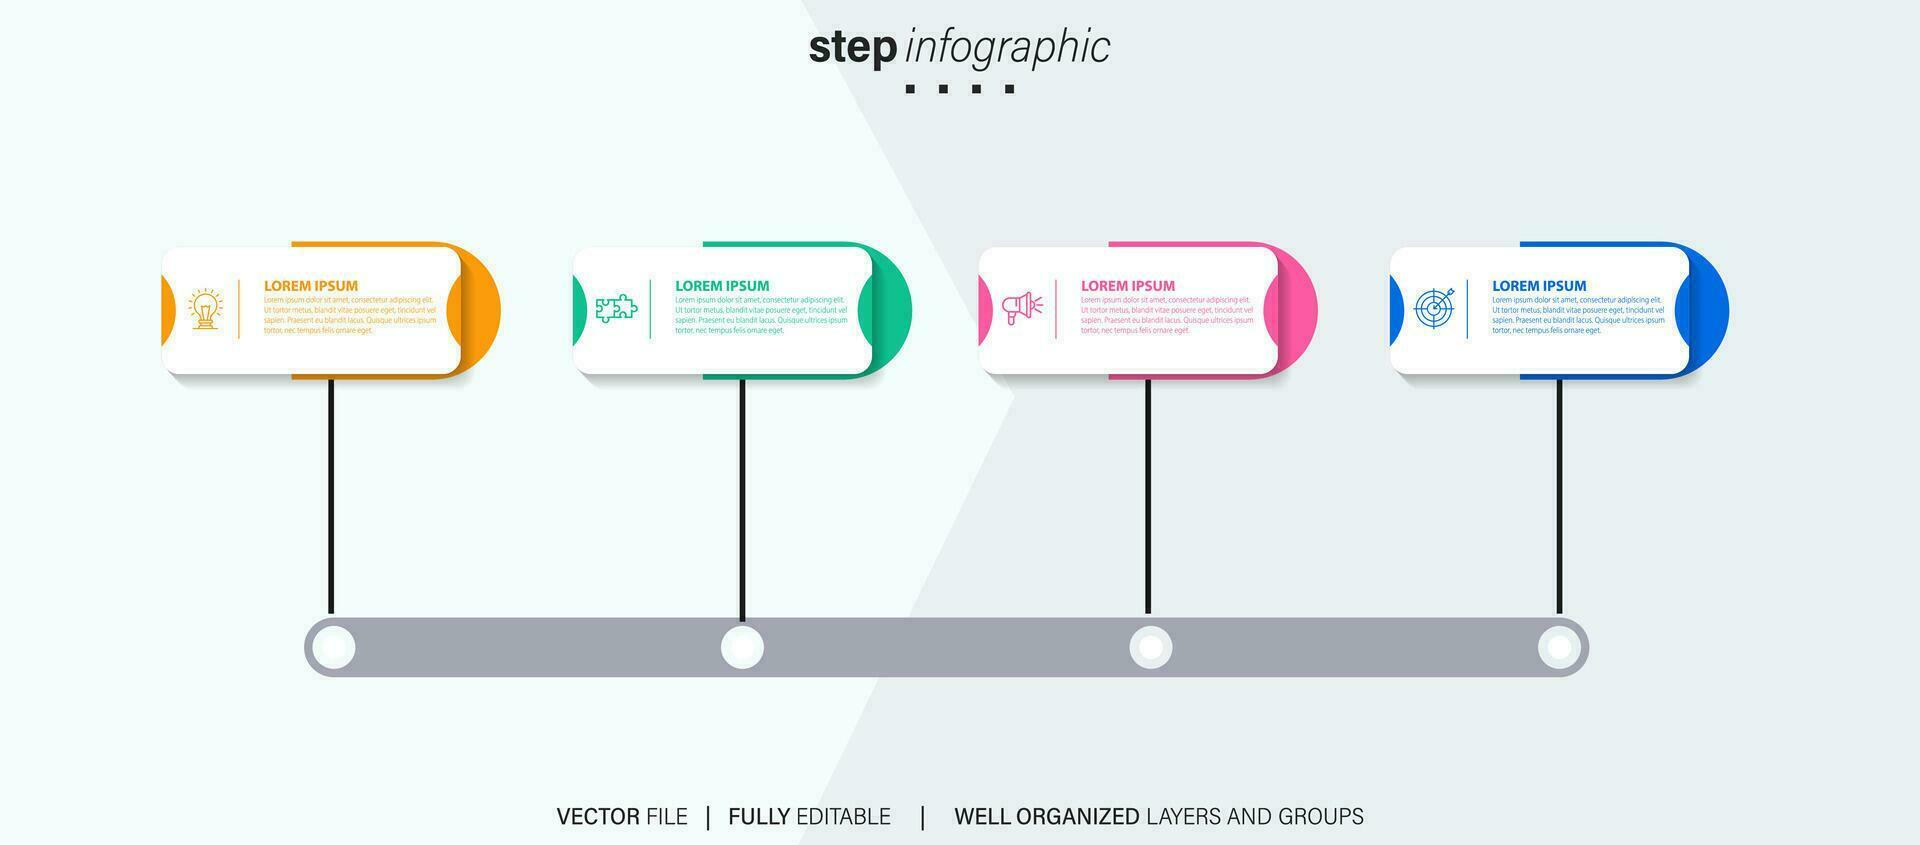 vector infografía plano modelo círculos para cuatro etiqueta, diagrama, grafico, presentación. negocio concepto con 4 4 opciones para contenido, diagrama de flujo, pasos, línea de tiempo, flujo de trabajo, marketing. eps10